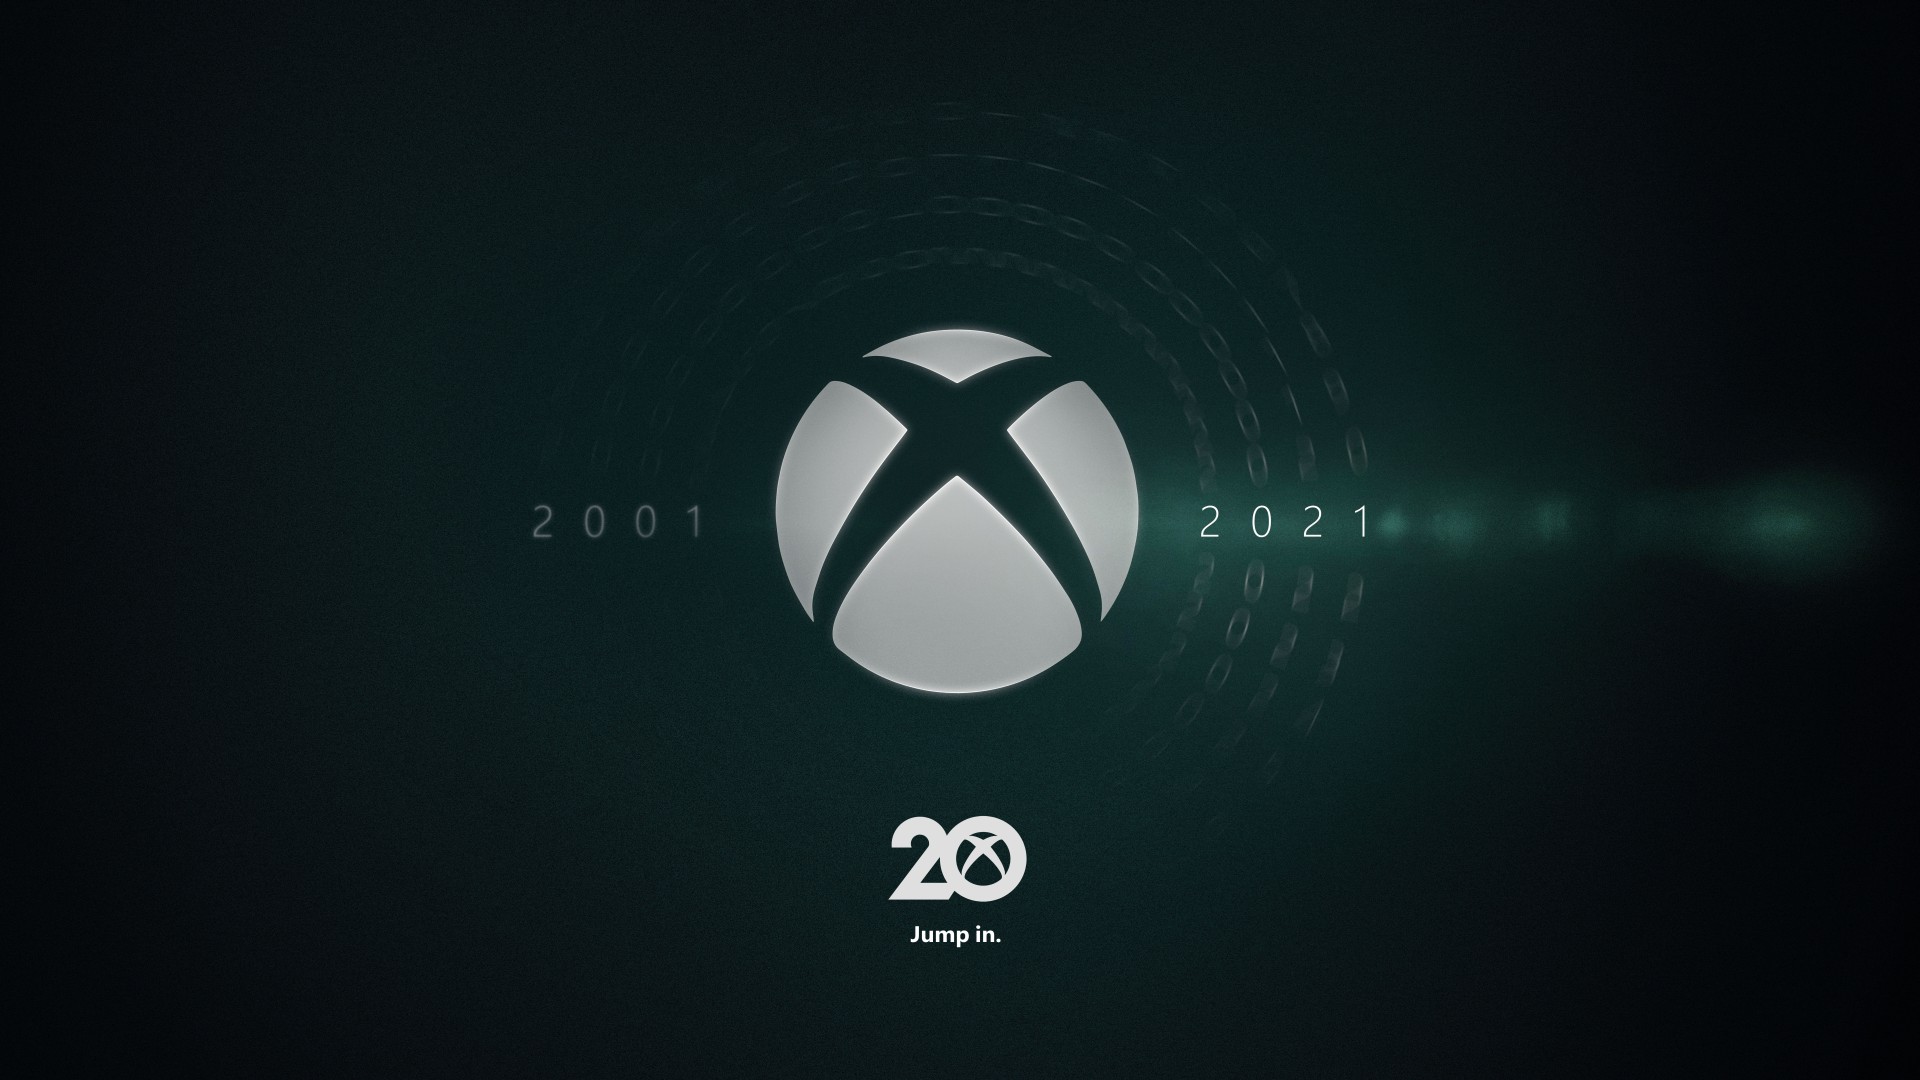 Video For Célébrons les 20 ans de Xbox